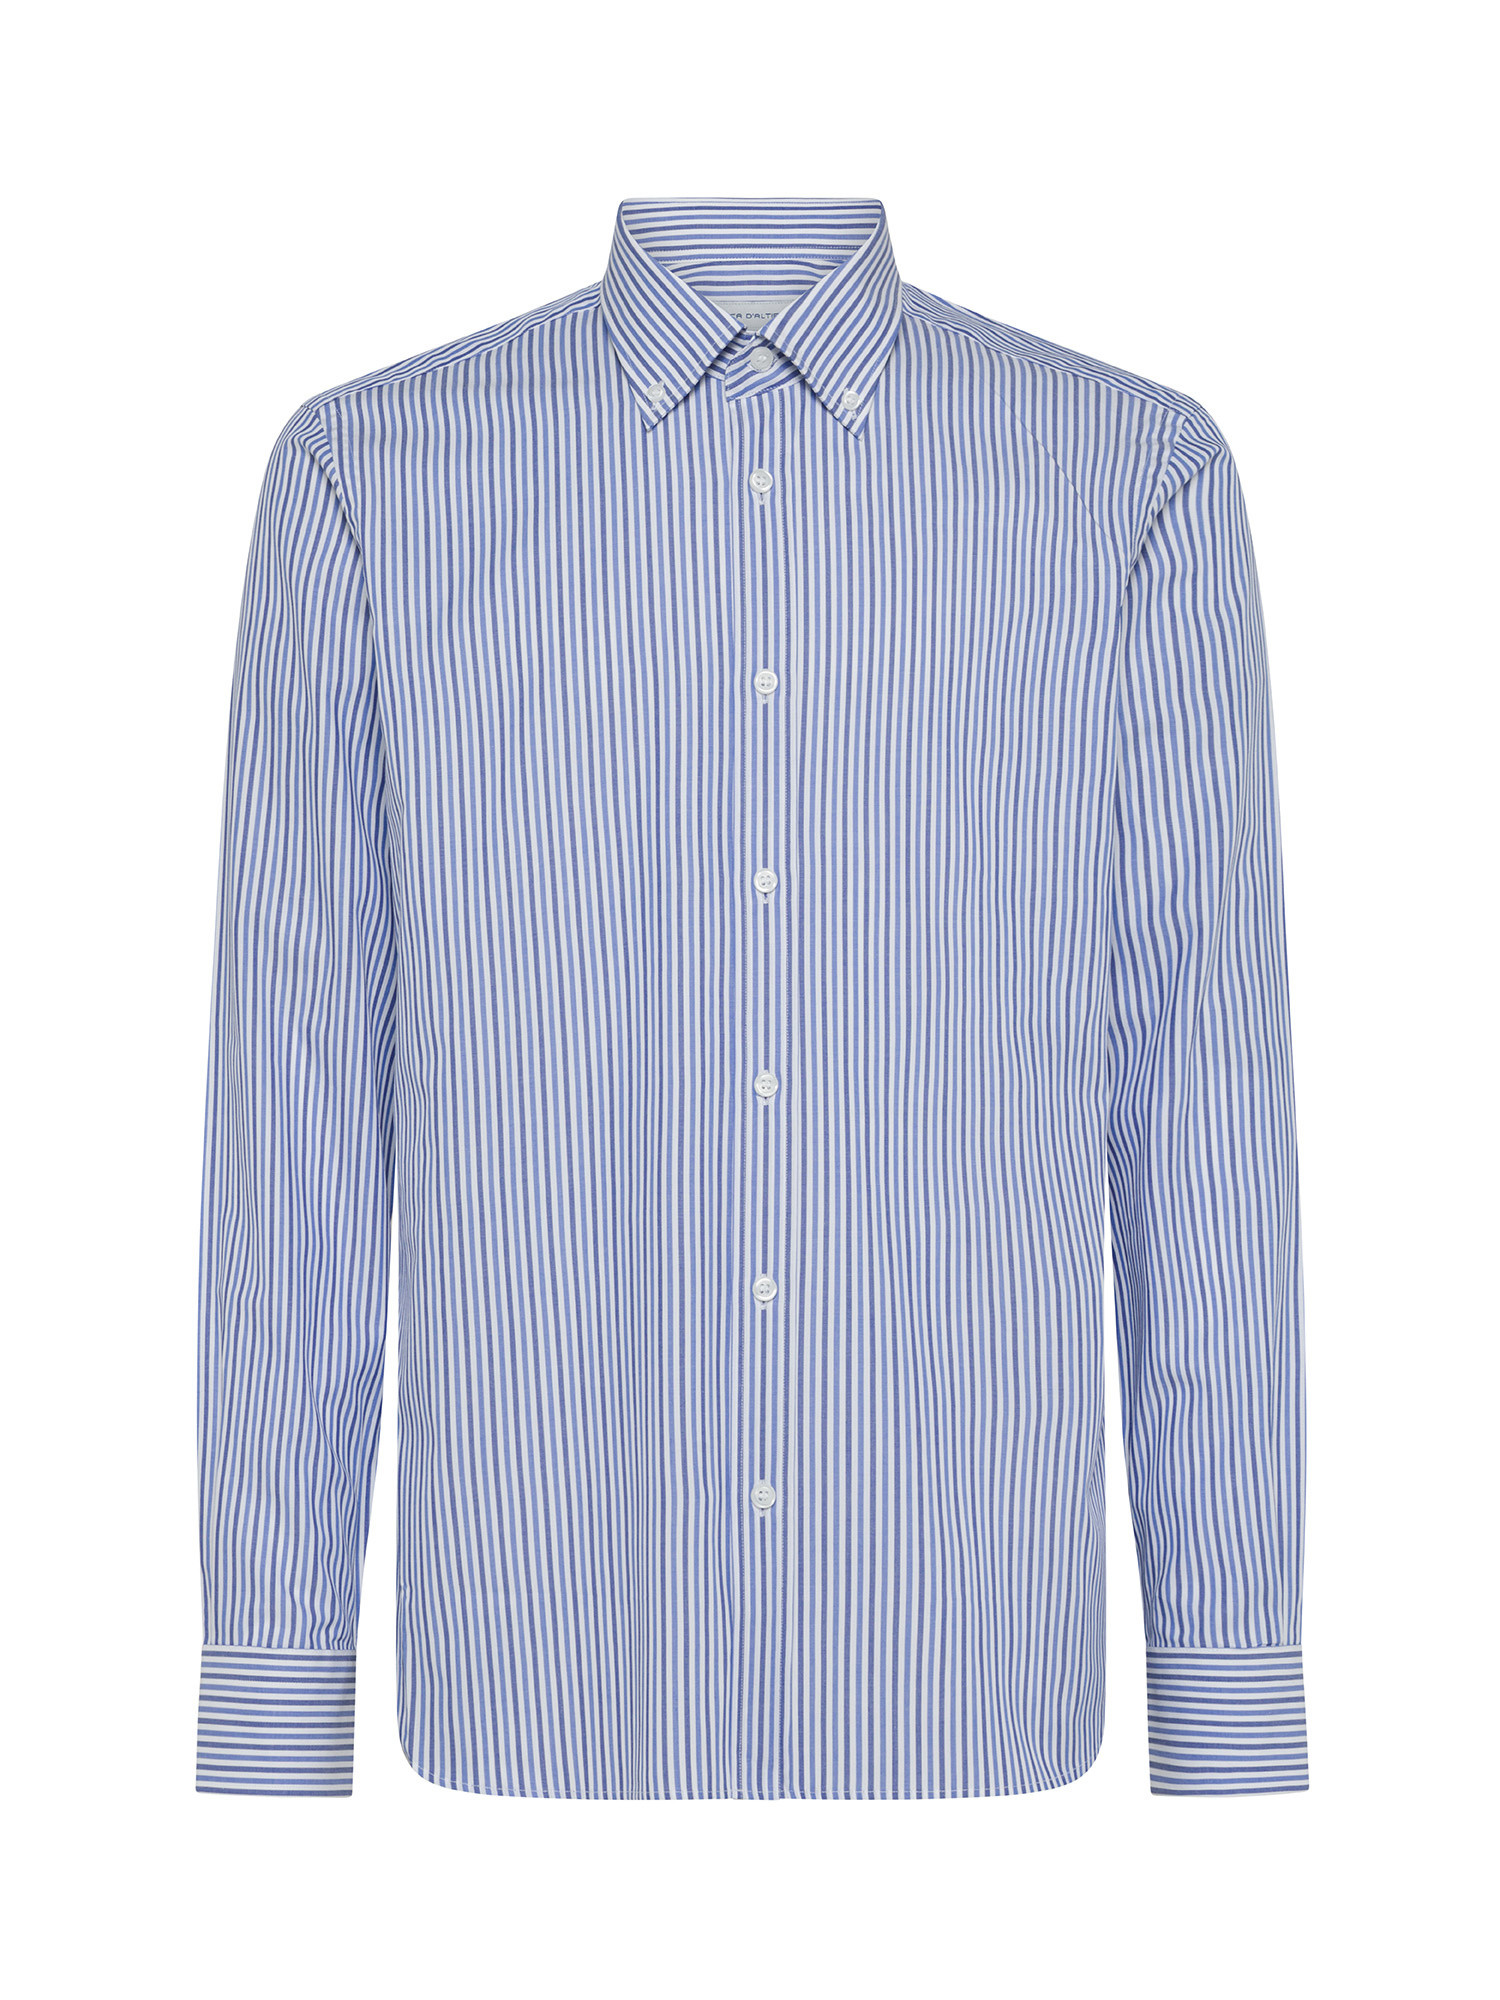 Luca D'Altieri - Camicia tailor fit in puro cotone, Blu, large image number 0